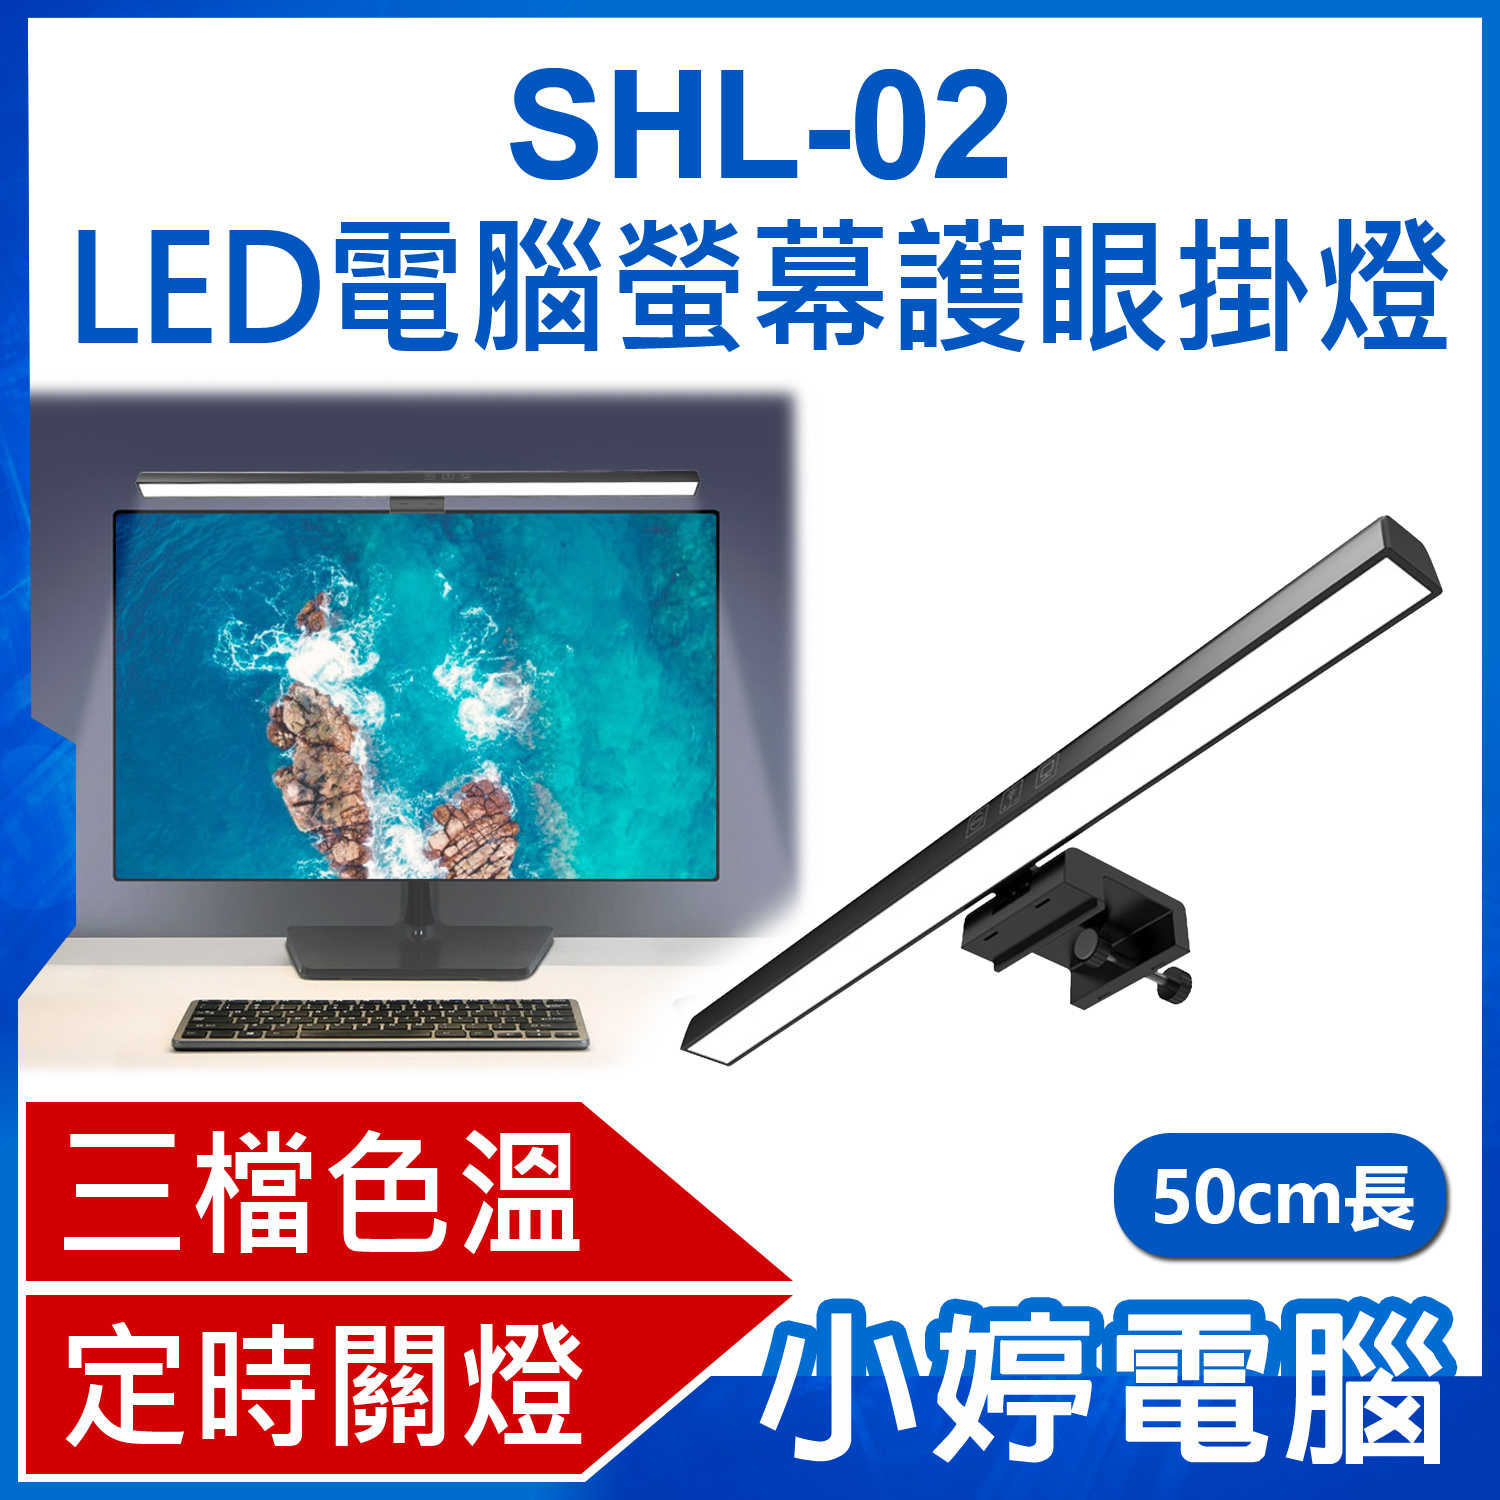 【小婷電腦】SHL-02 LED電腦螢幕護眼掛燈 50cm長 顯示器筆電掛燈/檯燈 三檔色溫 USB供電